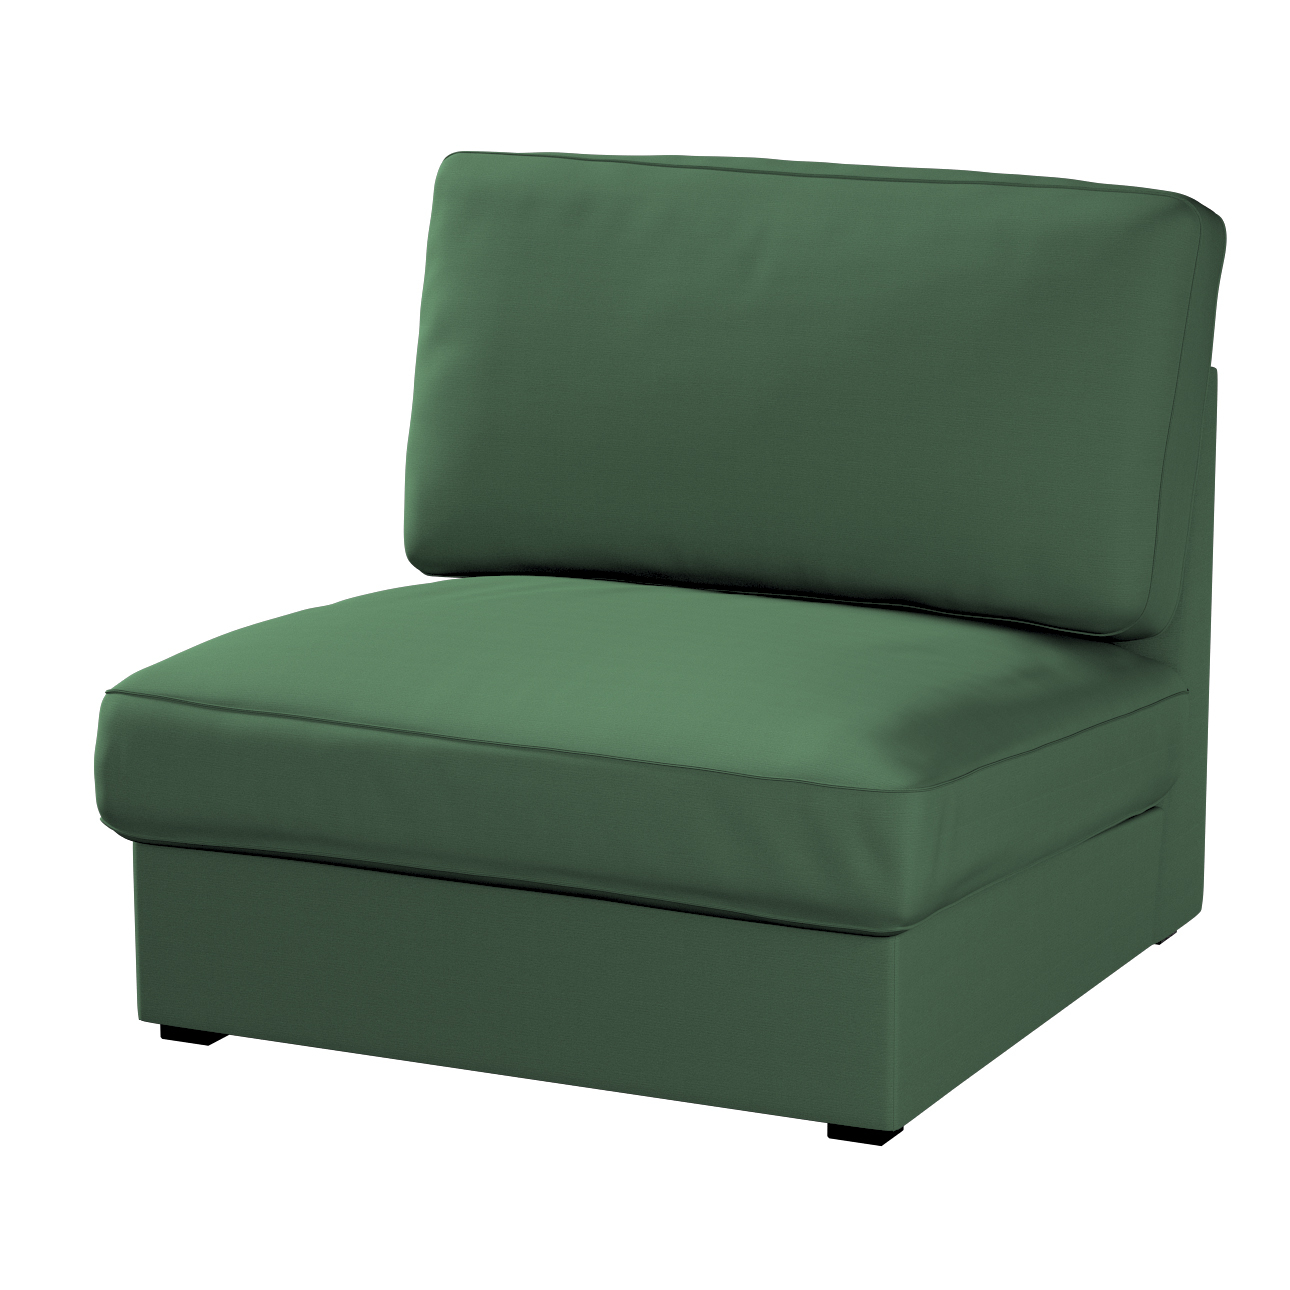 Bezug für Kivik Sessel nicht ausklappbar, waldgrün, Bezug für Sessel Kivik, günstig online kaufen